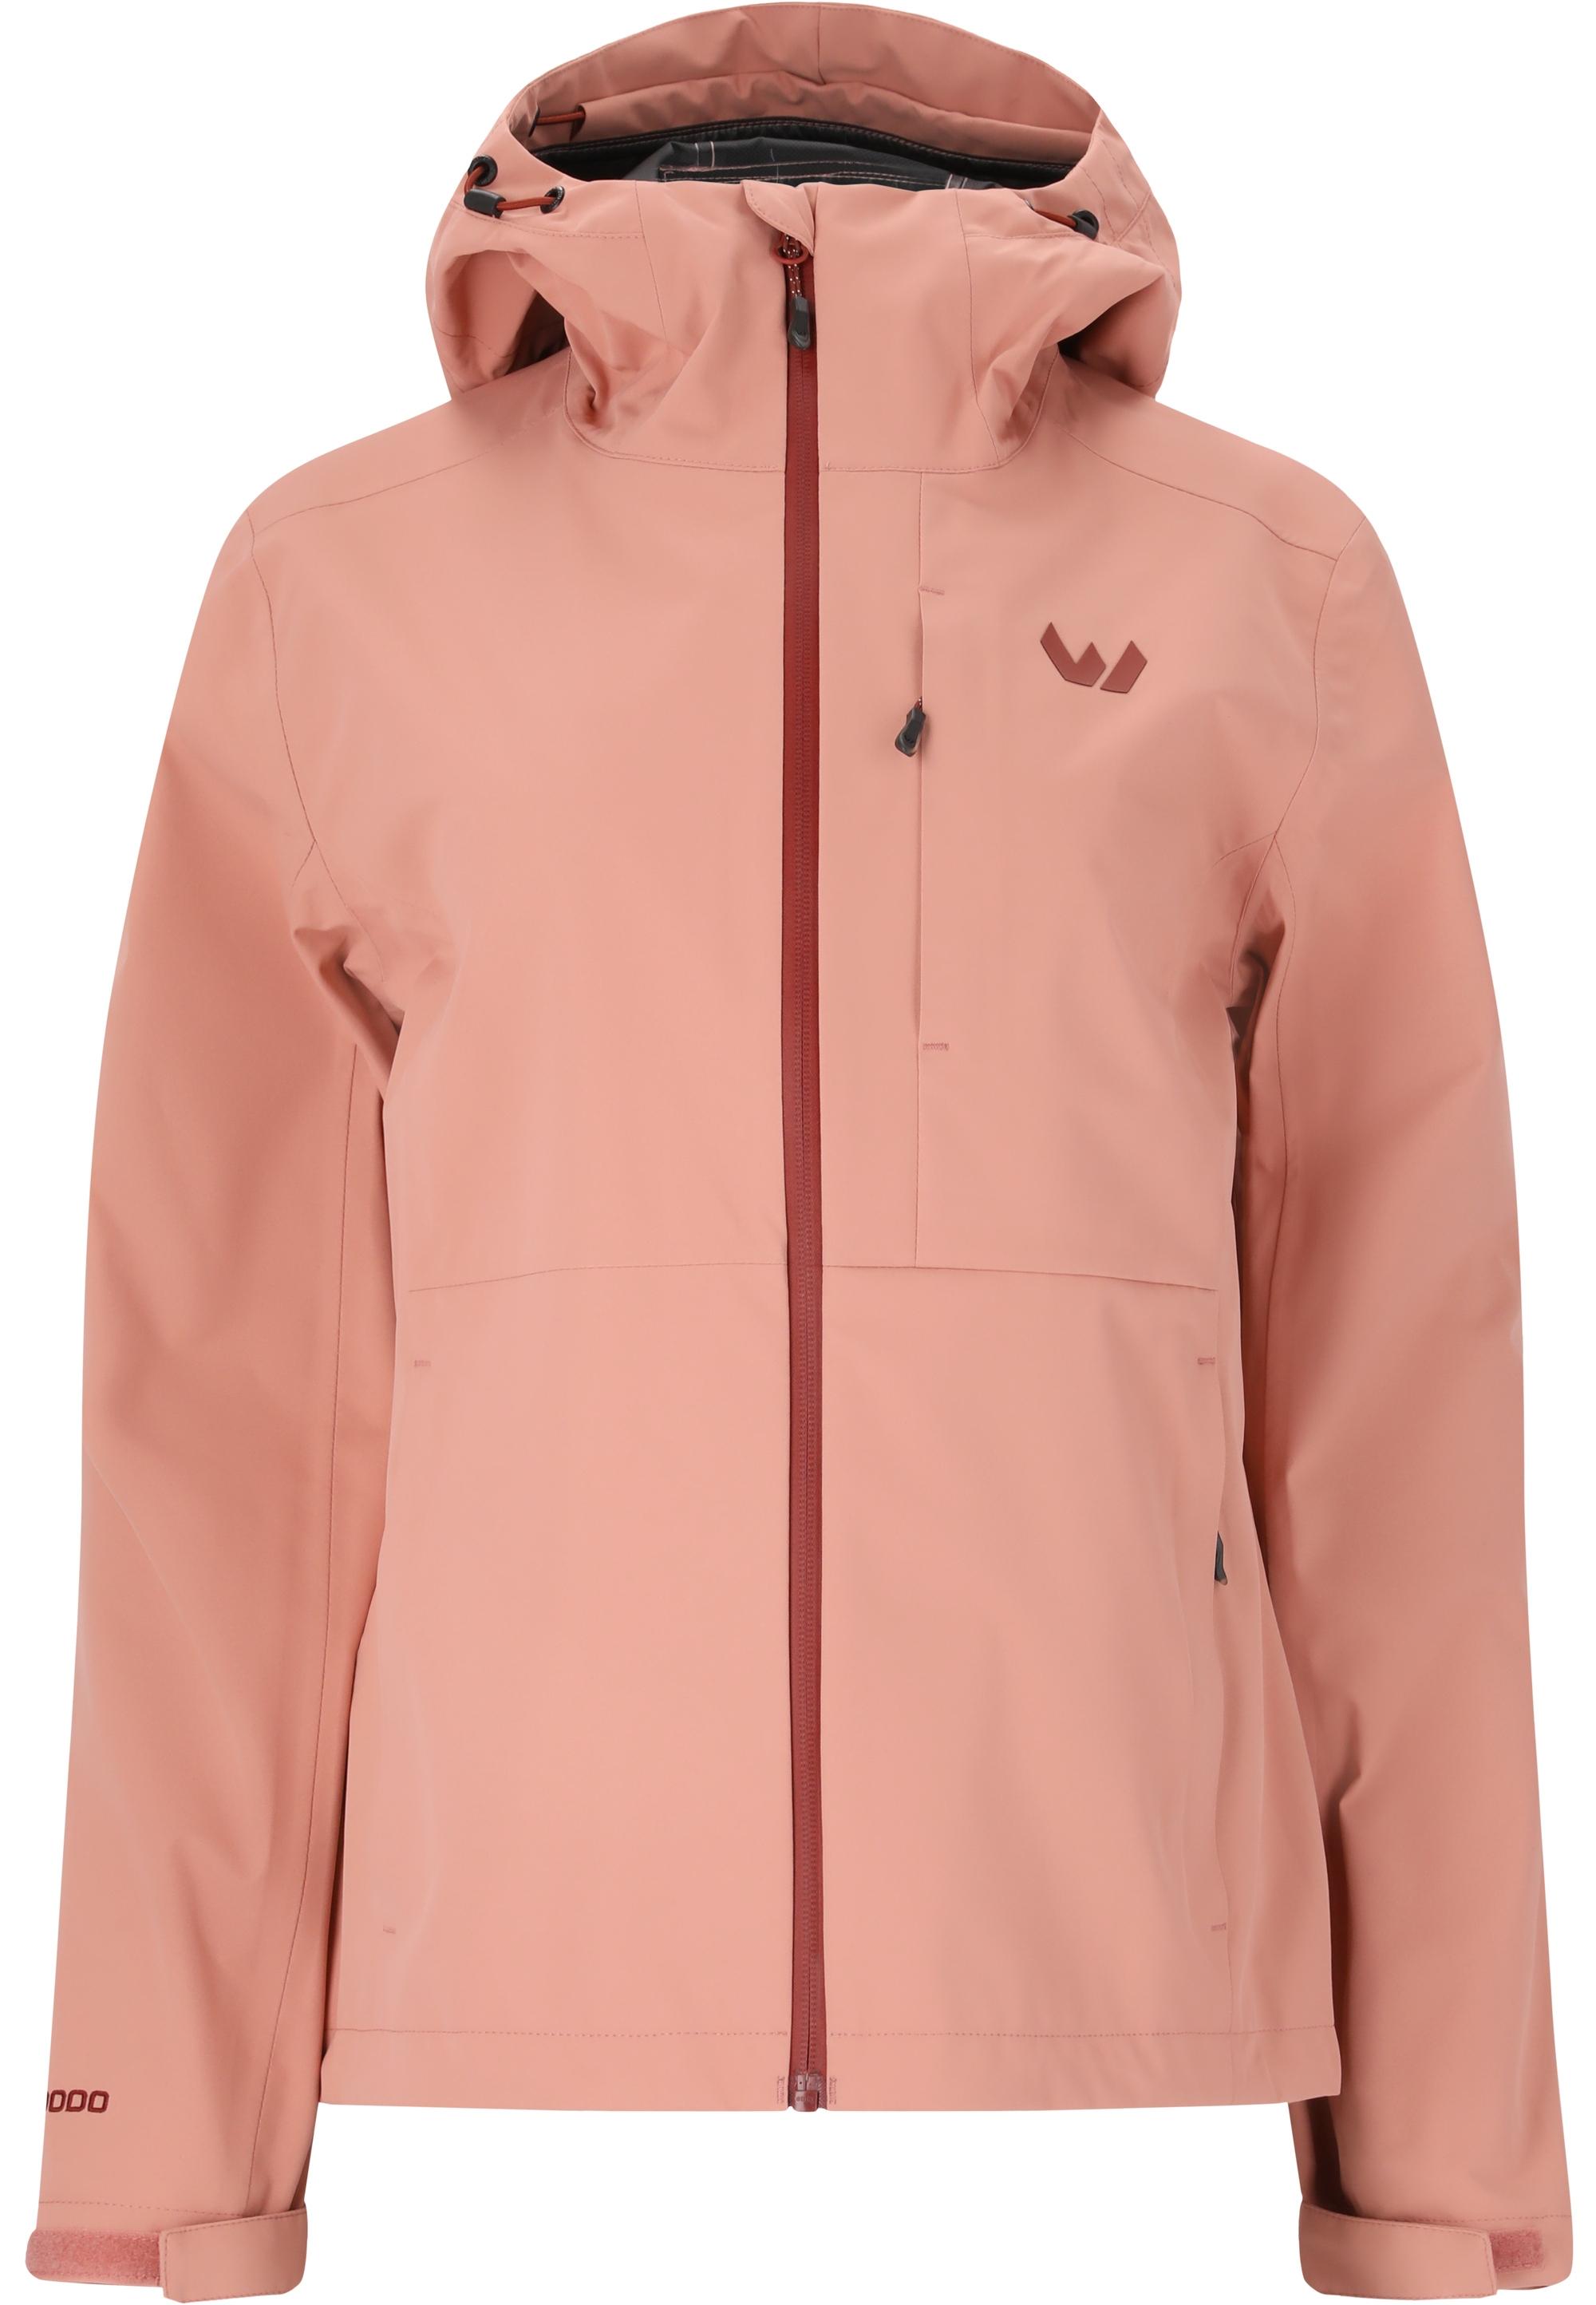 Jacken im Sale kaufen Shop im rosa in Online SportScheck von